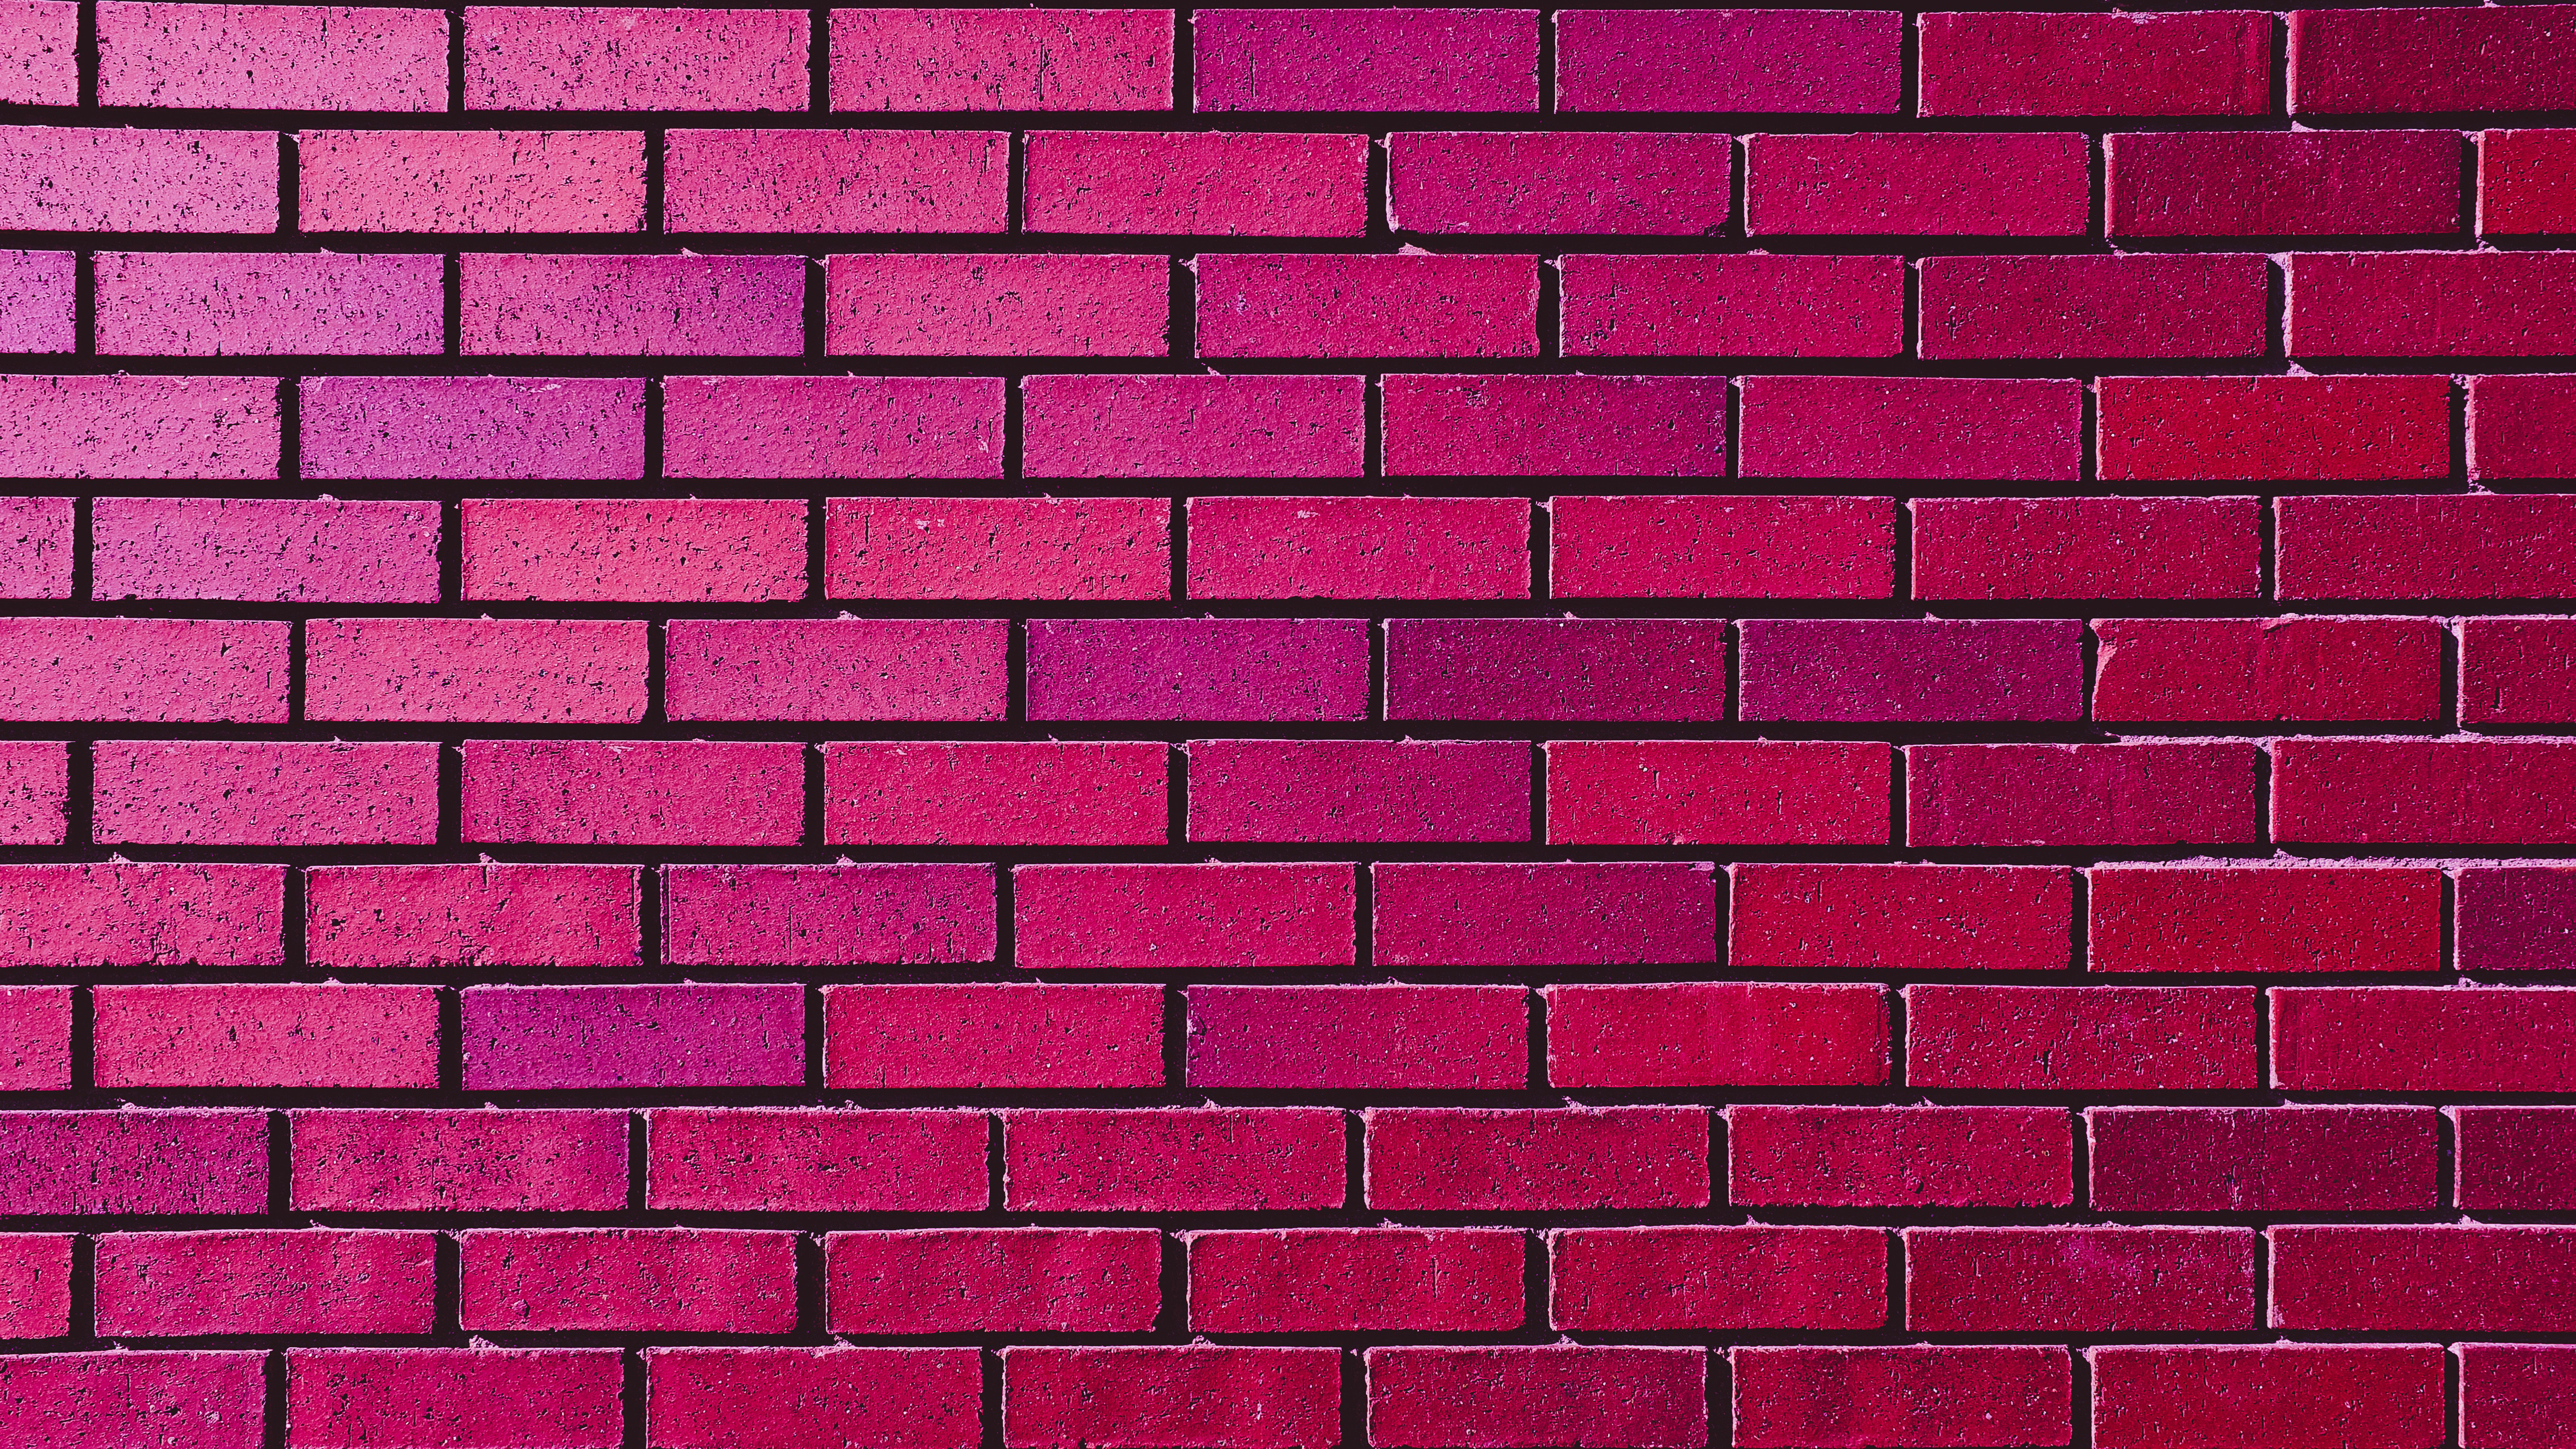 Brick Pink Wall 5120x2880